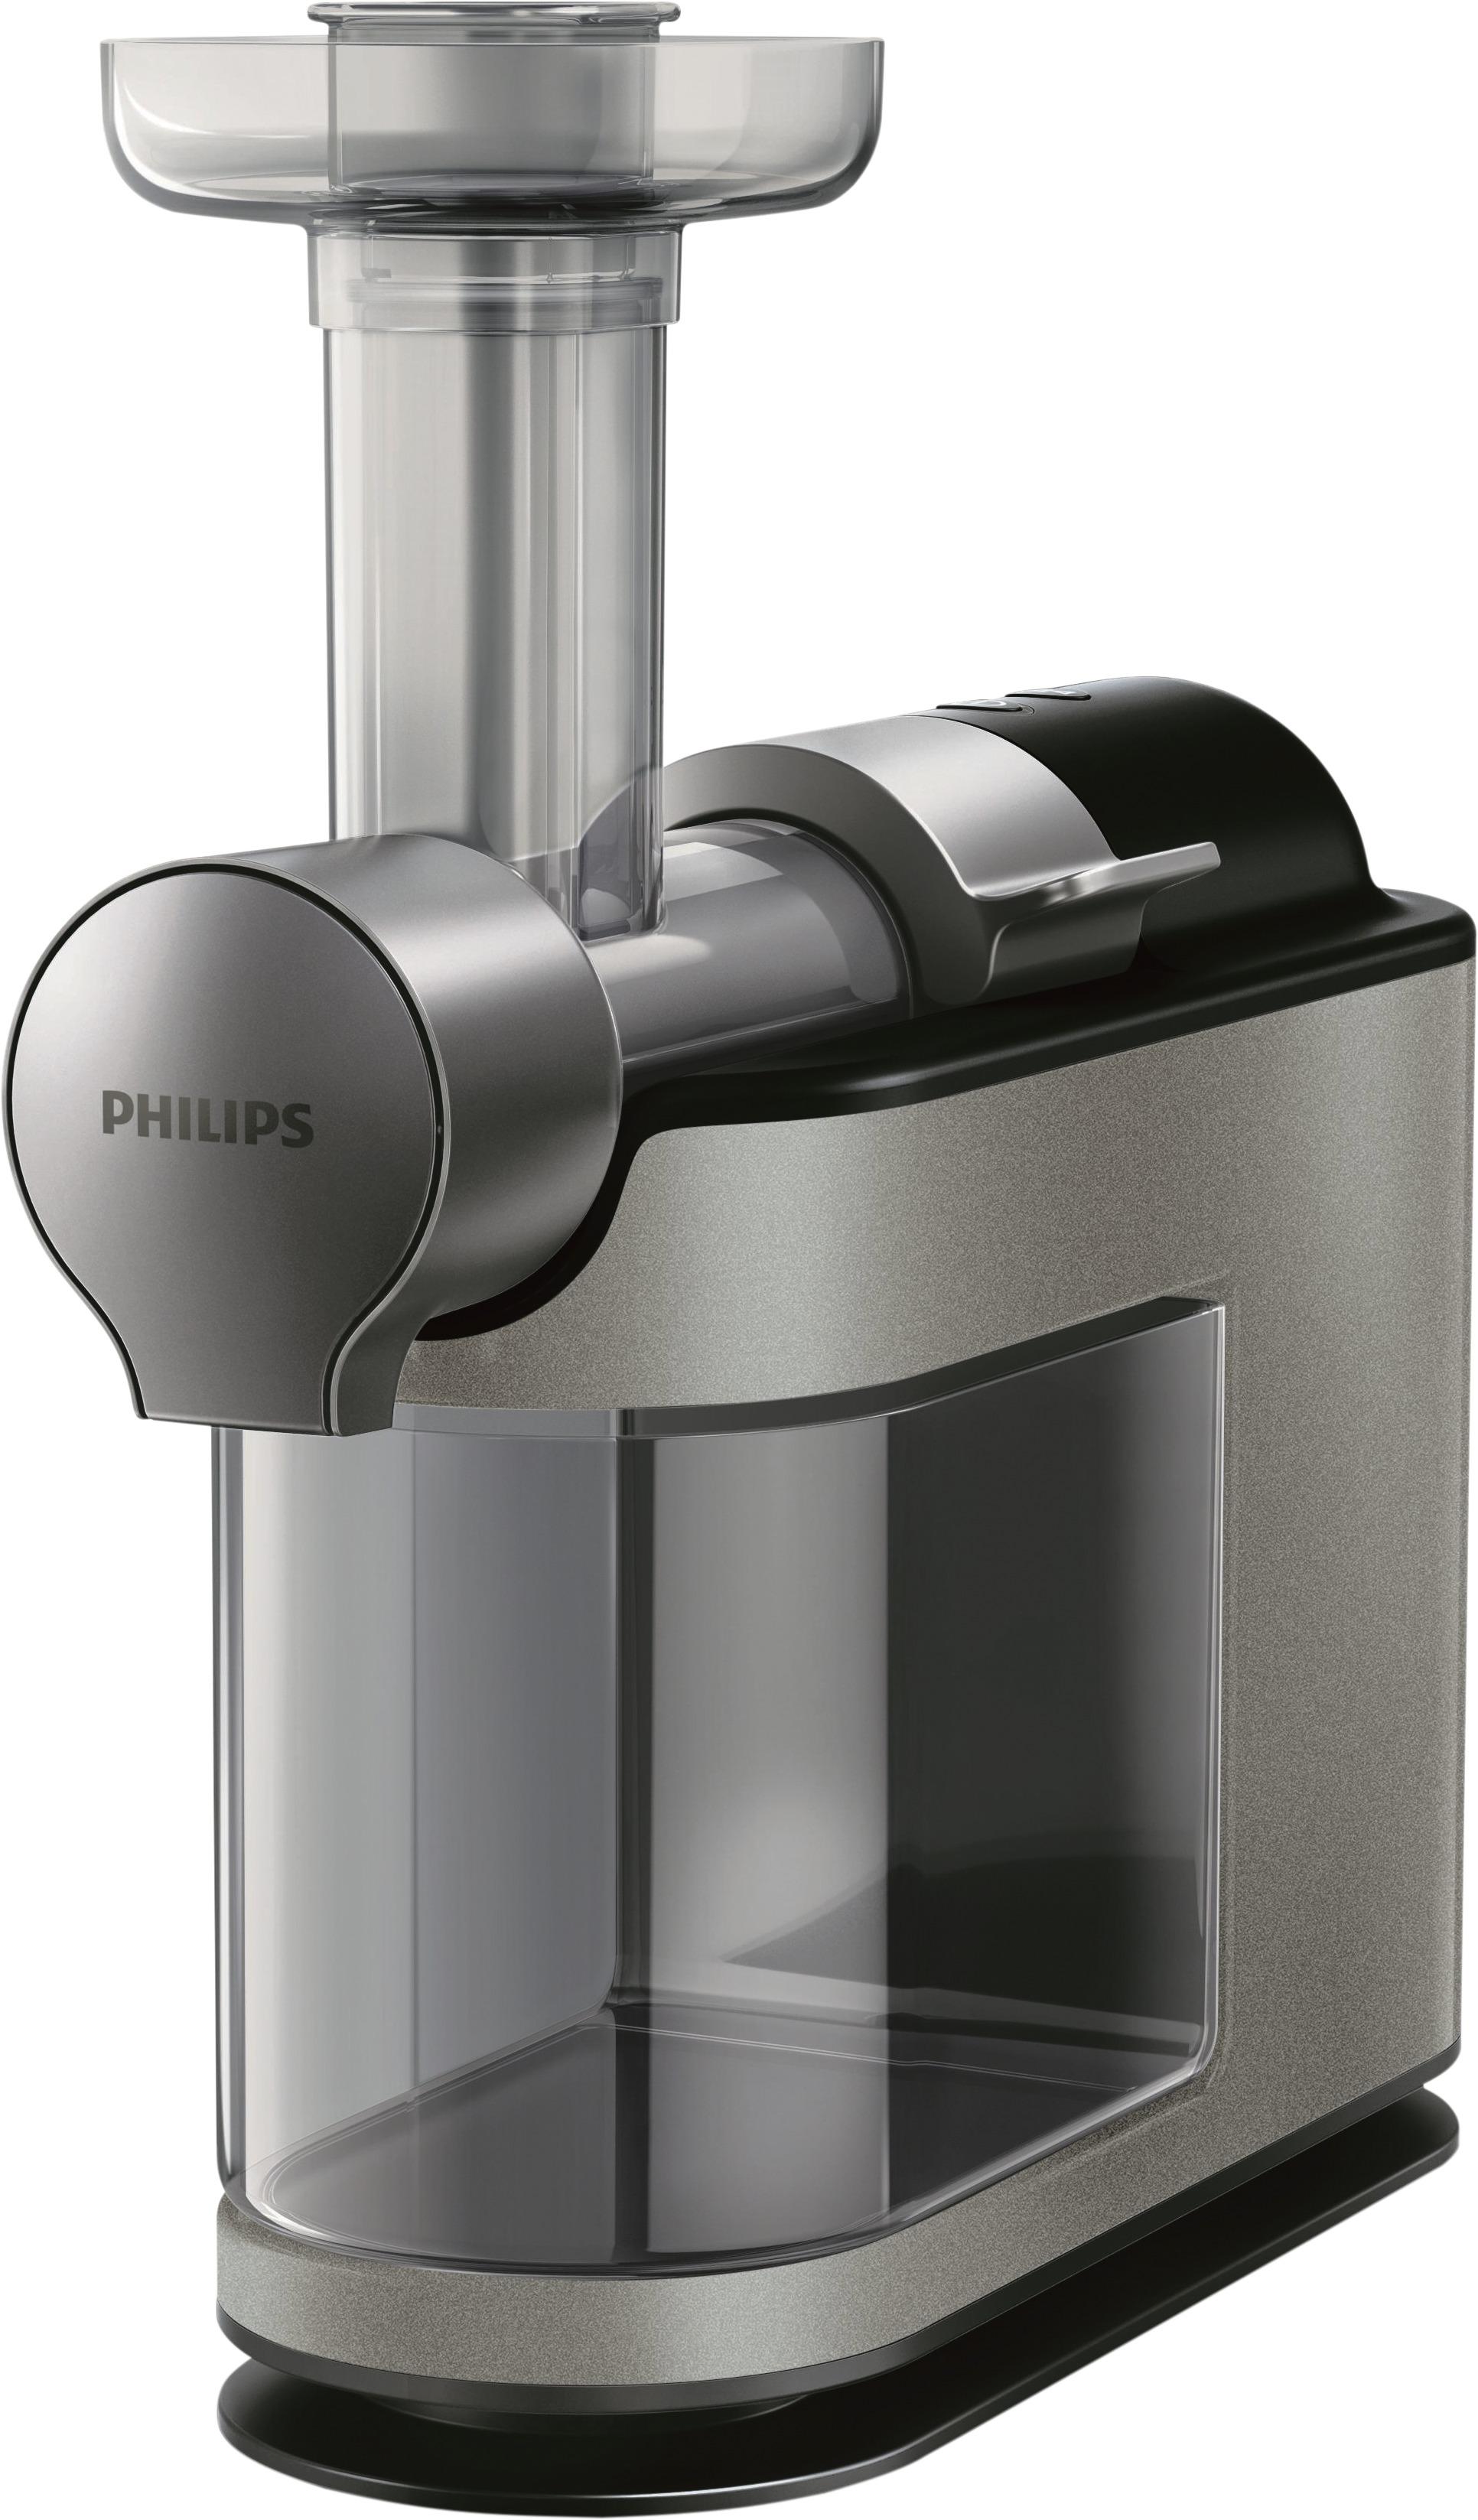 Philips Collection Masticating Juice Extractor Metallic Best Buy